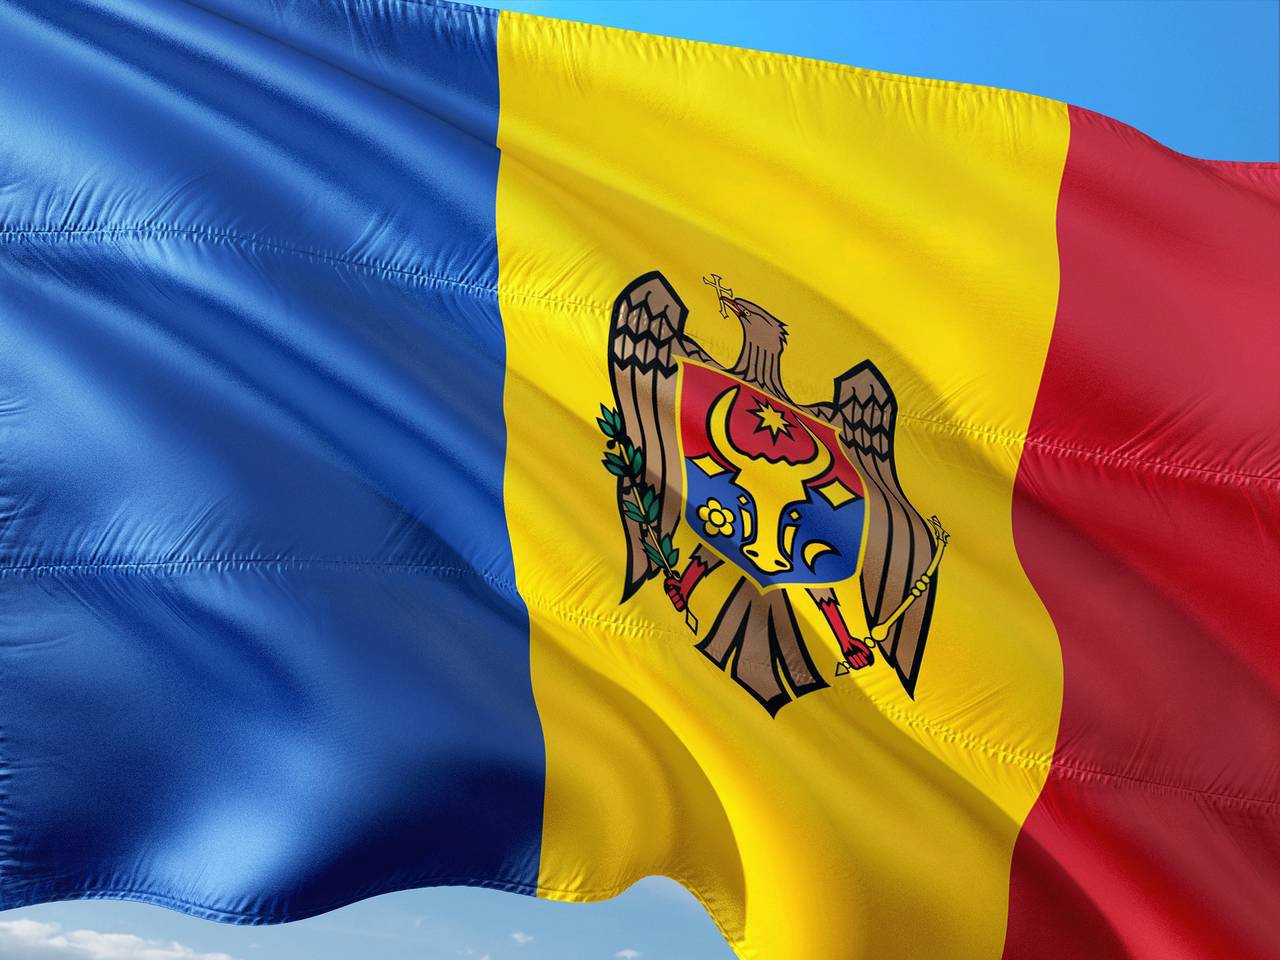 На 11 июля 2021 года в Республике Молдова намечено проведение досрочных парламентских выборов. Фото: pixabay.com